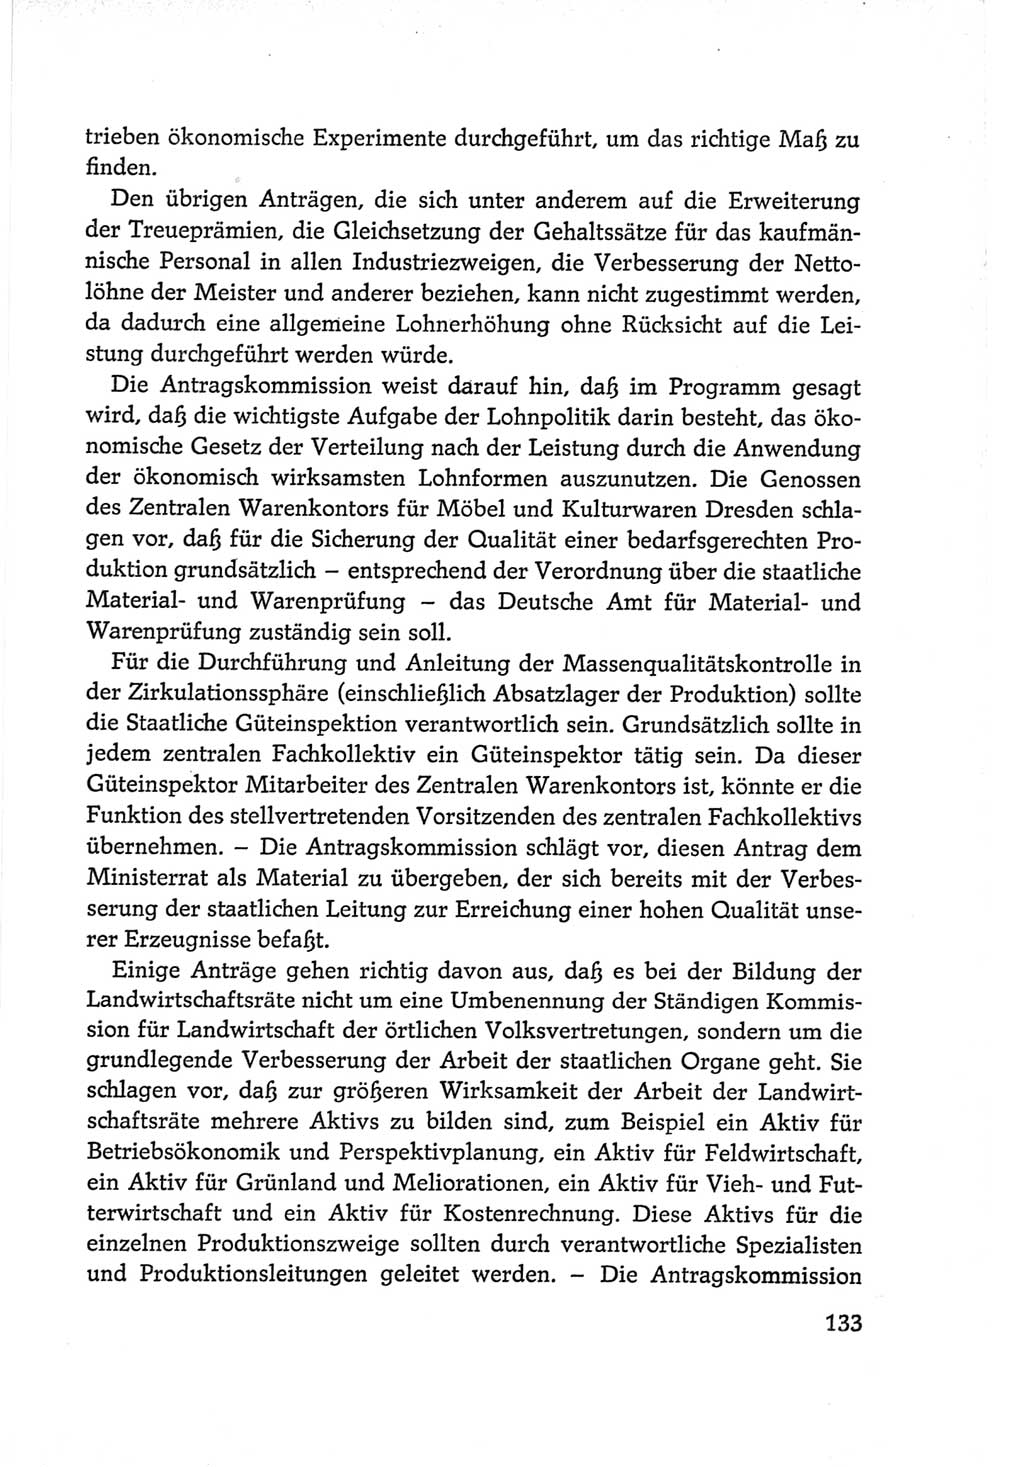 Protokoll der Verhandlungen des Ⅵ. Parteitages der Sozialistischen Einheitspartei Deutschlands (SED) [Deutsche Demokratische Republik (DDR)] 1963, Band Ⅱ, Seite 133 (Prot. Verh. Ⅵ. PT SED DDR 1963, Bd. Ⅱ, S. 133)